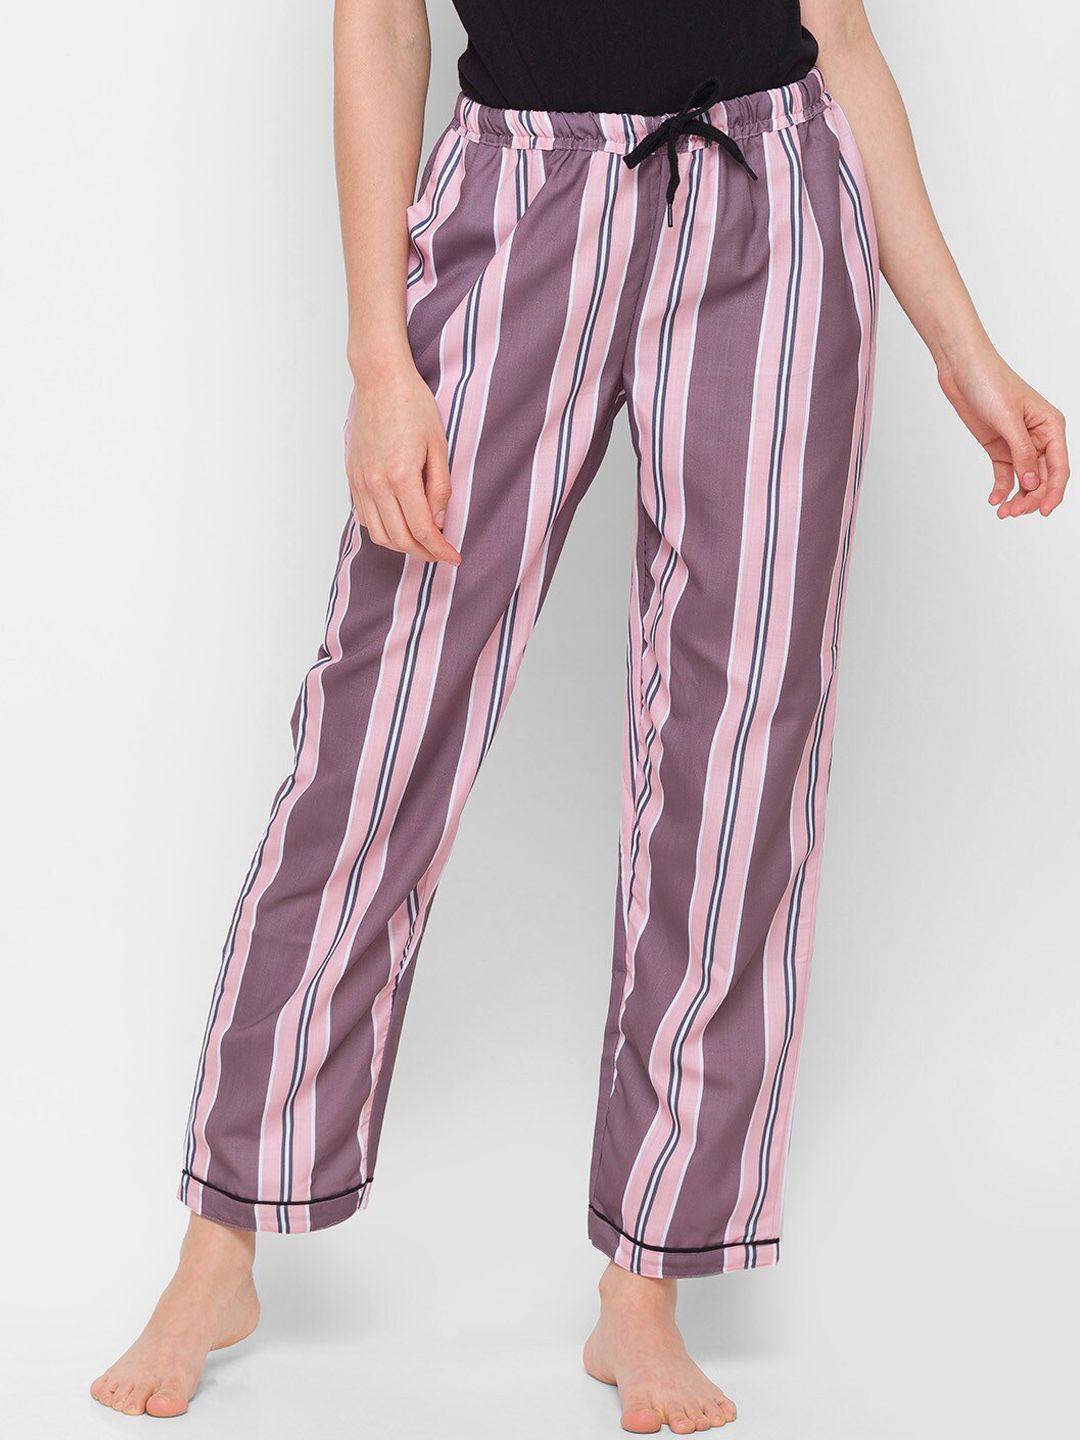 noira women pink & brown striped cotton lounge pants